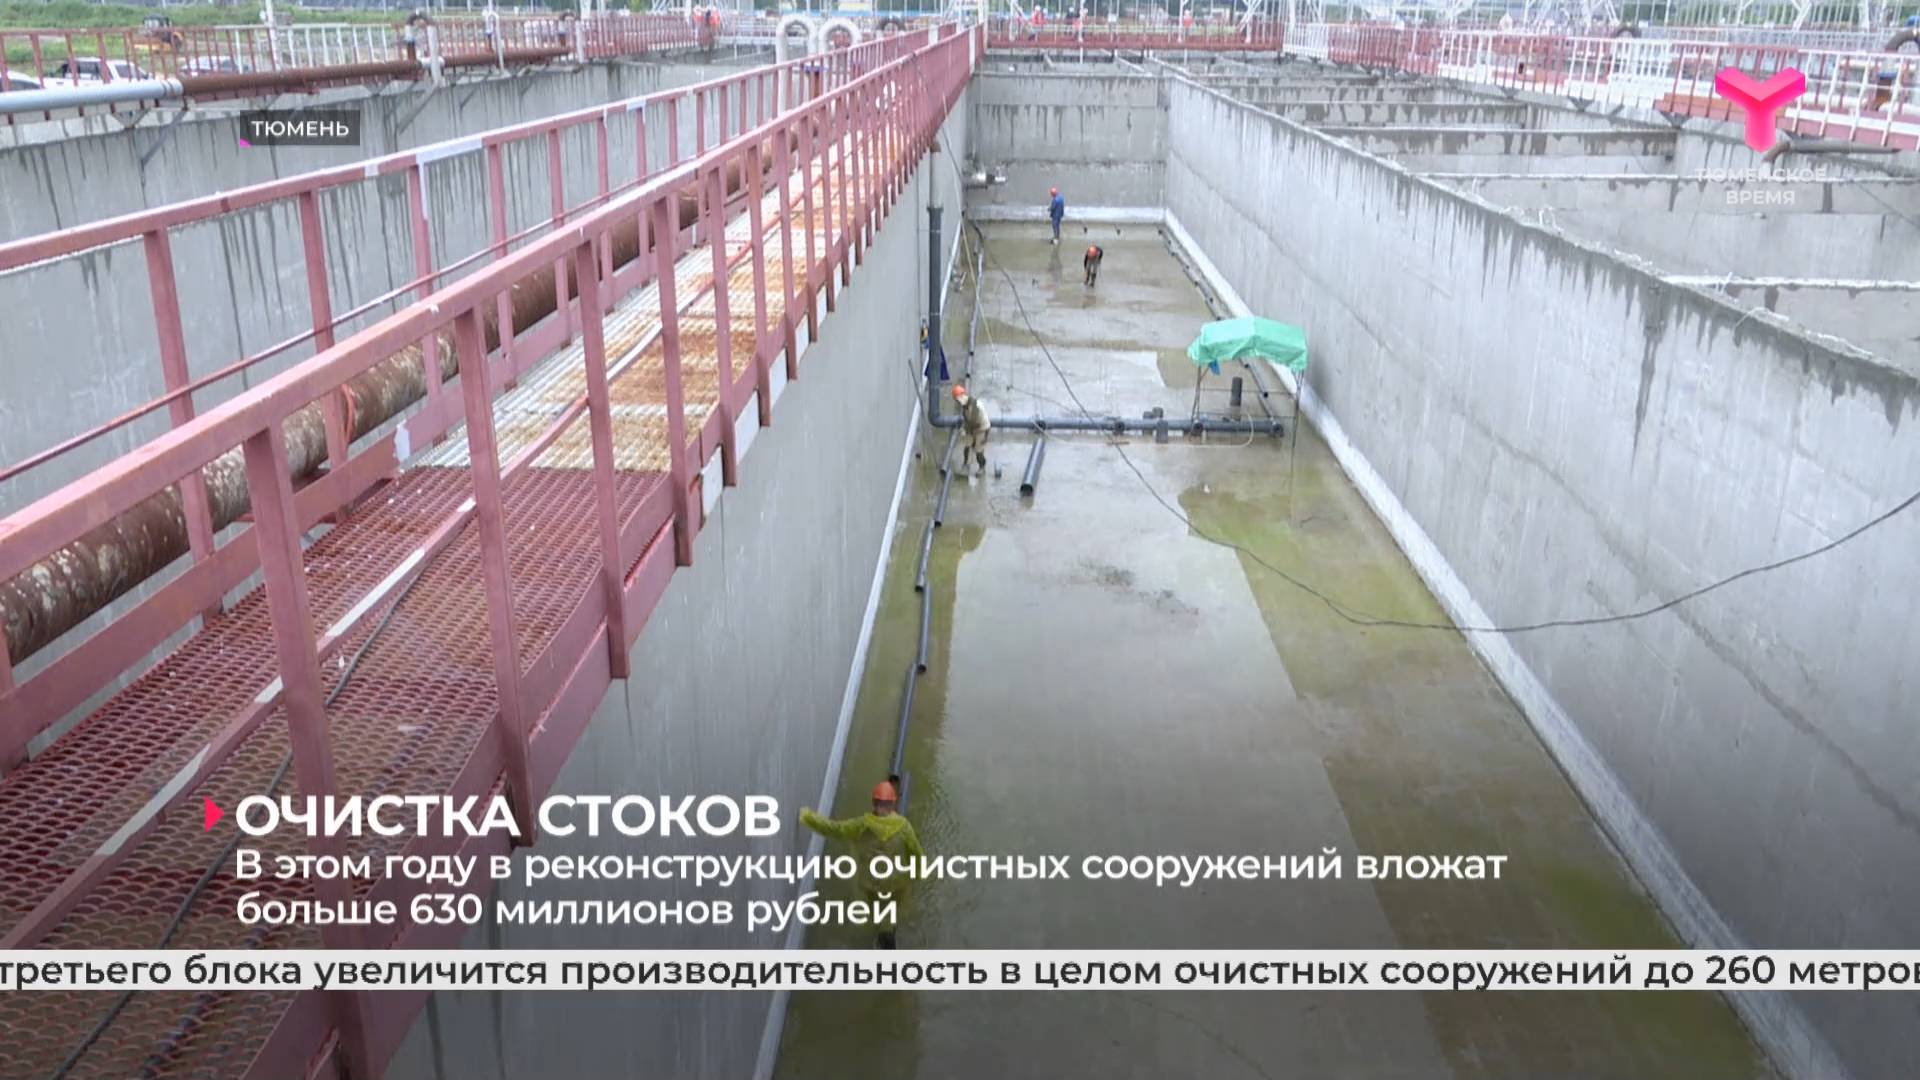 В этом году в реконструкцию очистных сооружений вложат больше 630 миллионов рублей